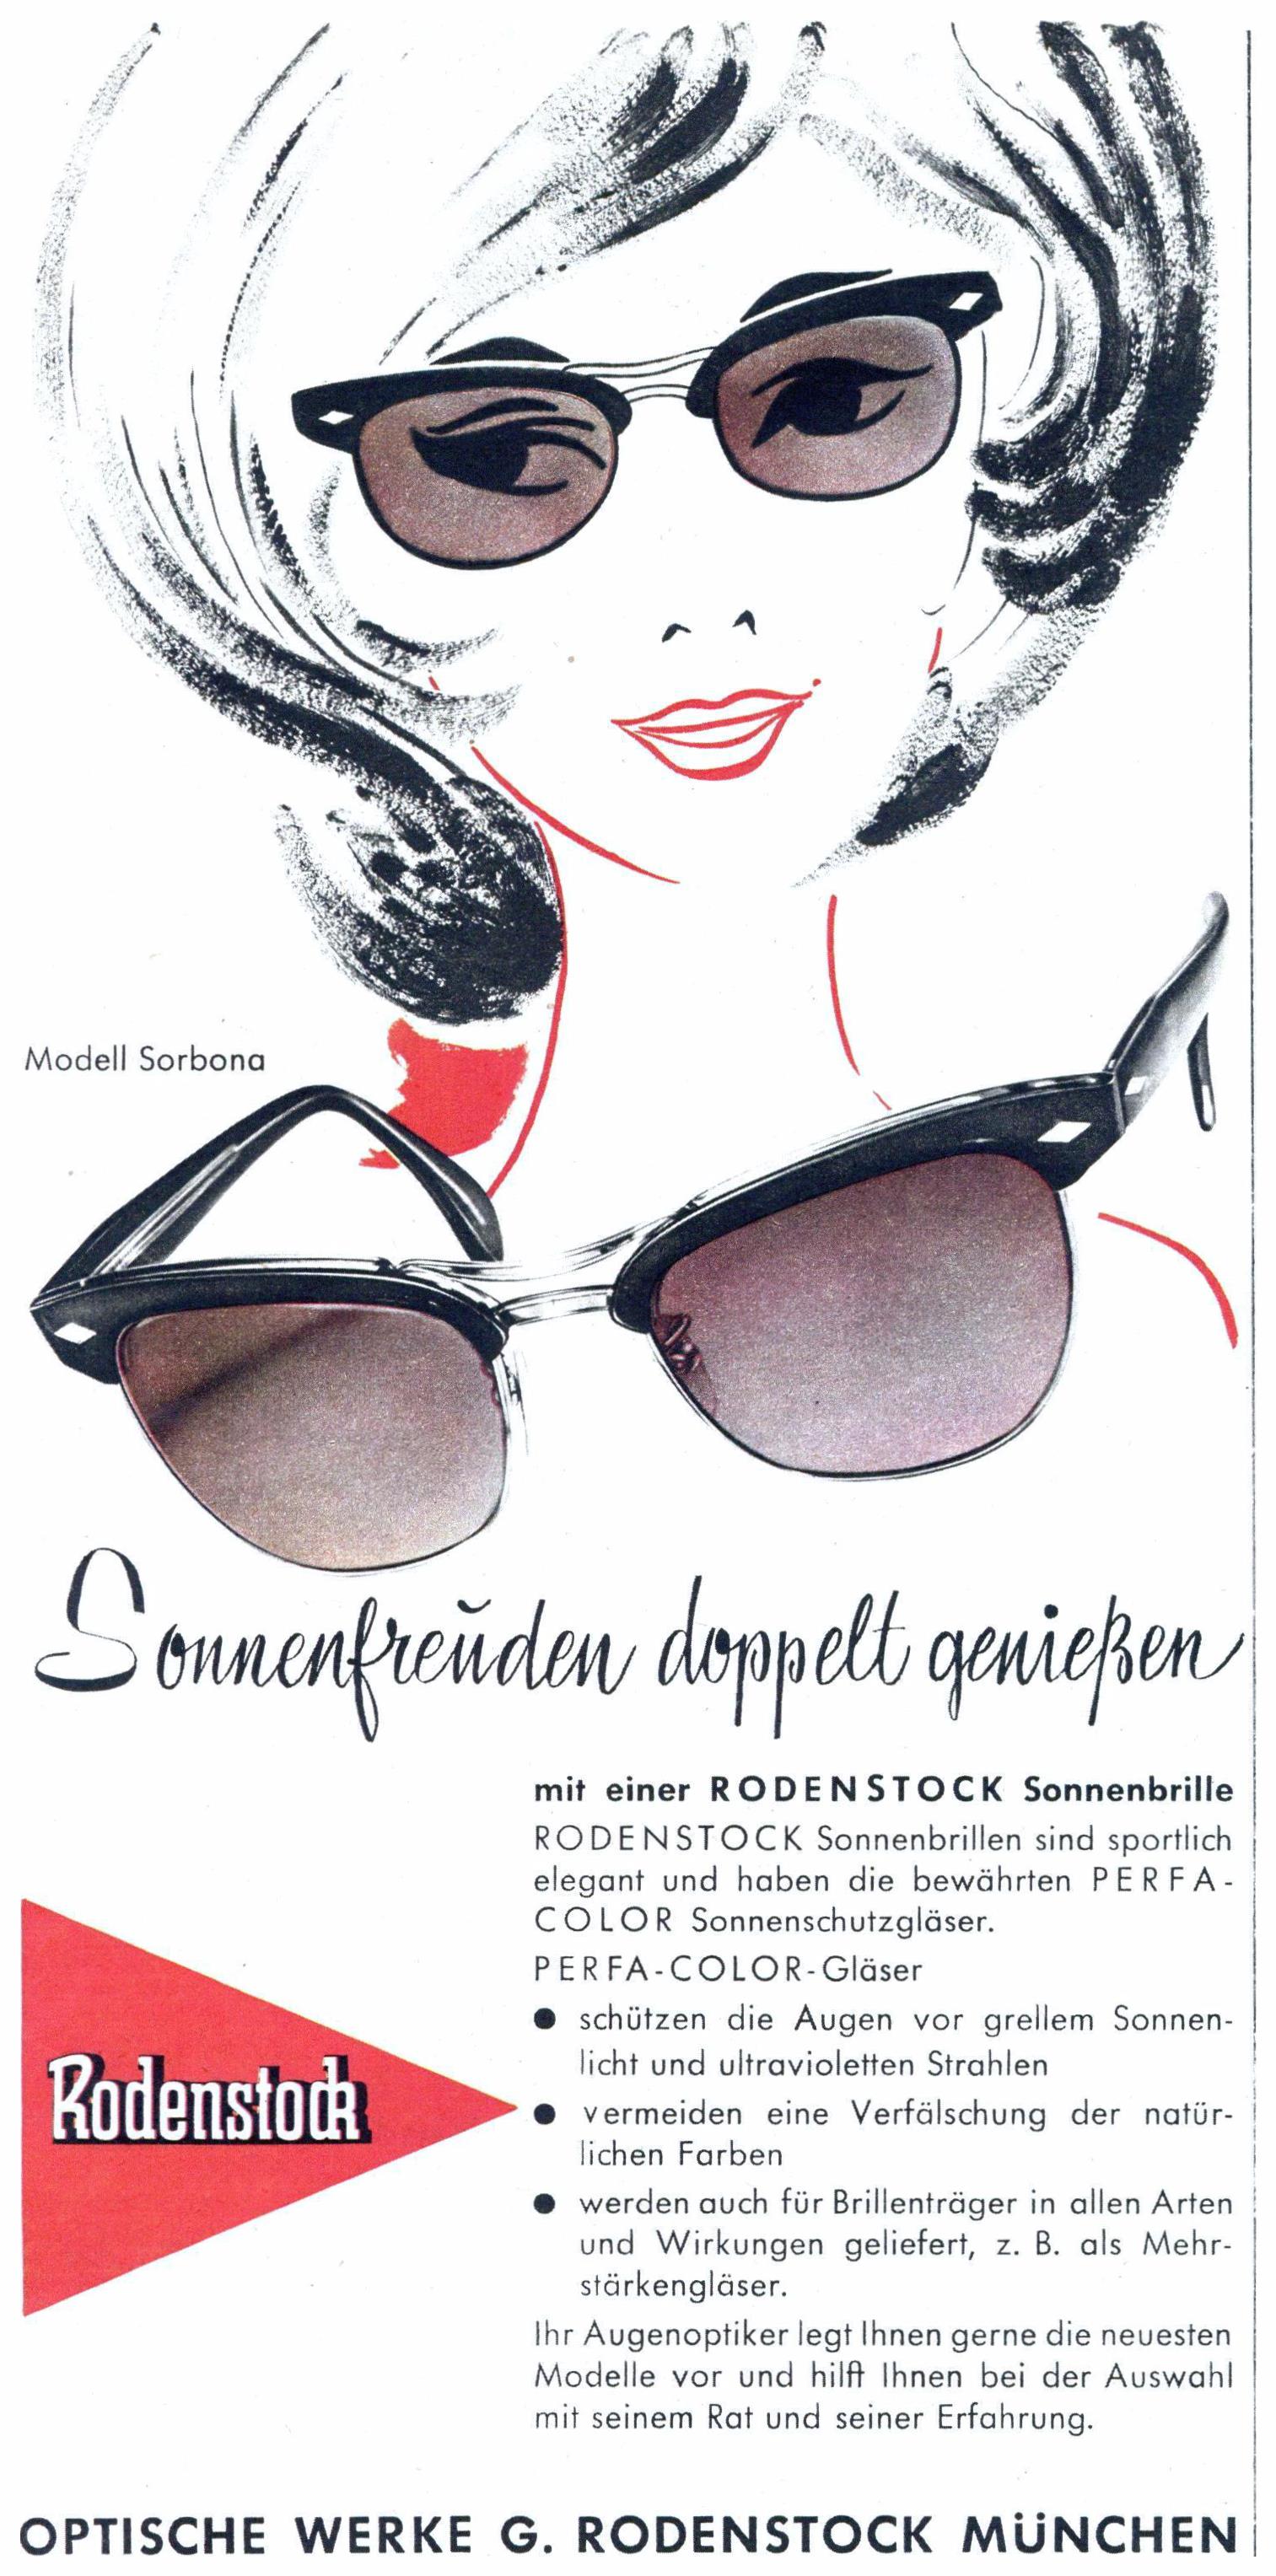 Rodenstock 1960 0.jpg